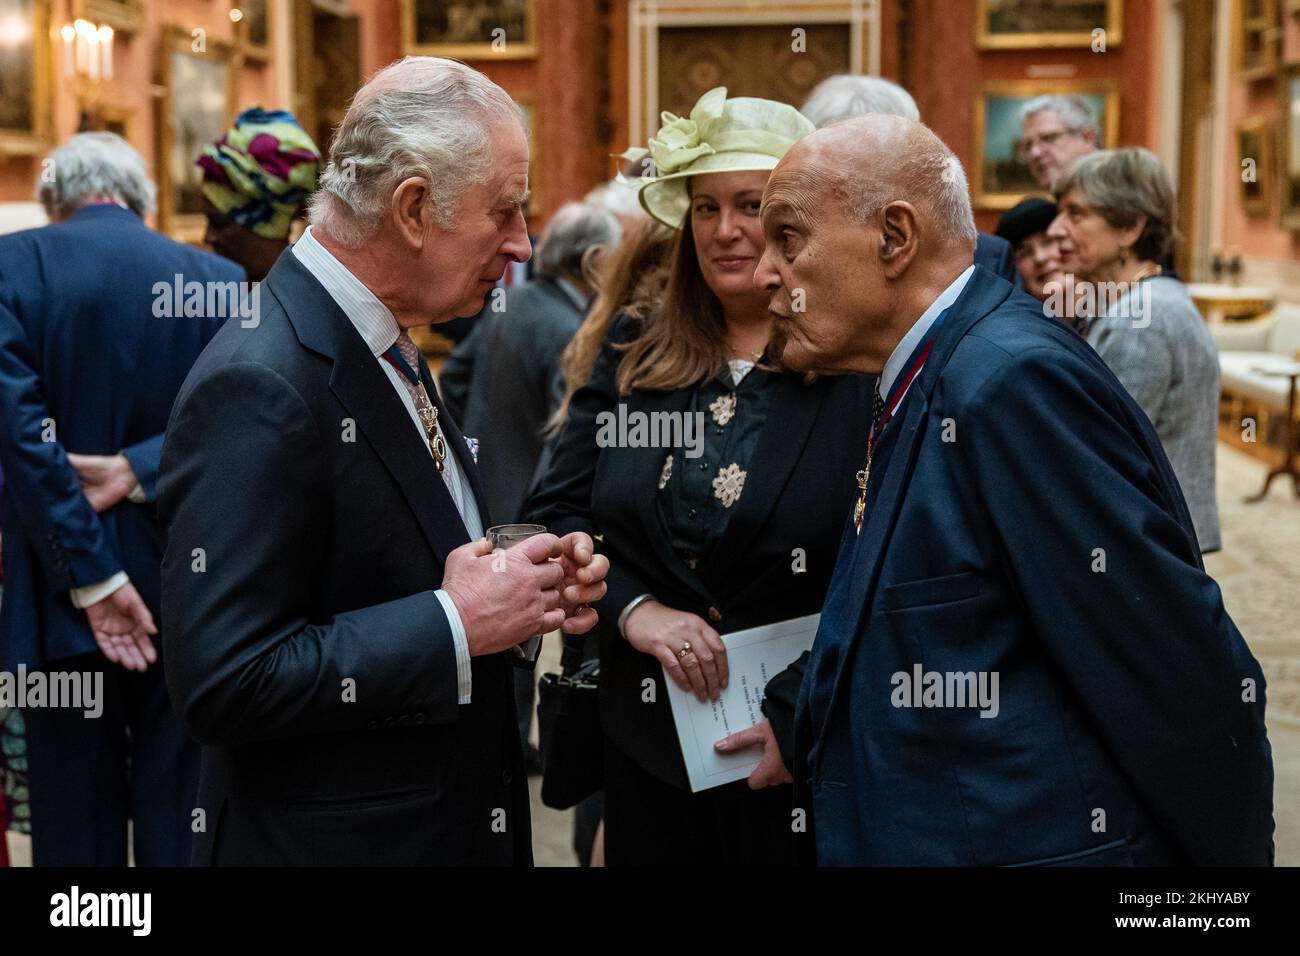 Le roi Charles III s'entretient avec le professeur Magdi Yacoub lors d'un déjeuner à l'intention des membres de l'ordre du mérite à Buckingham Palace, Londres. Date de la photo: Jeudi 24 novembre 2022. Banque D'Images